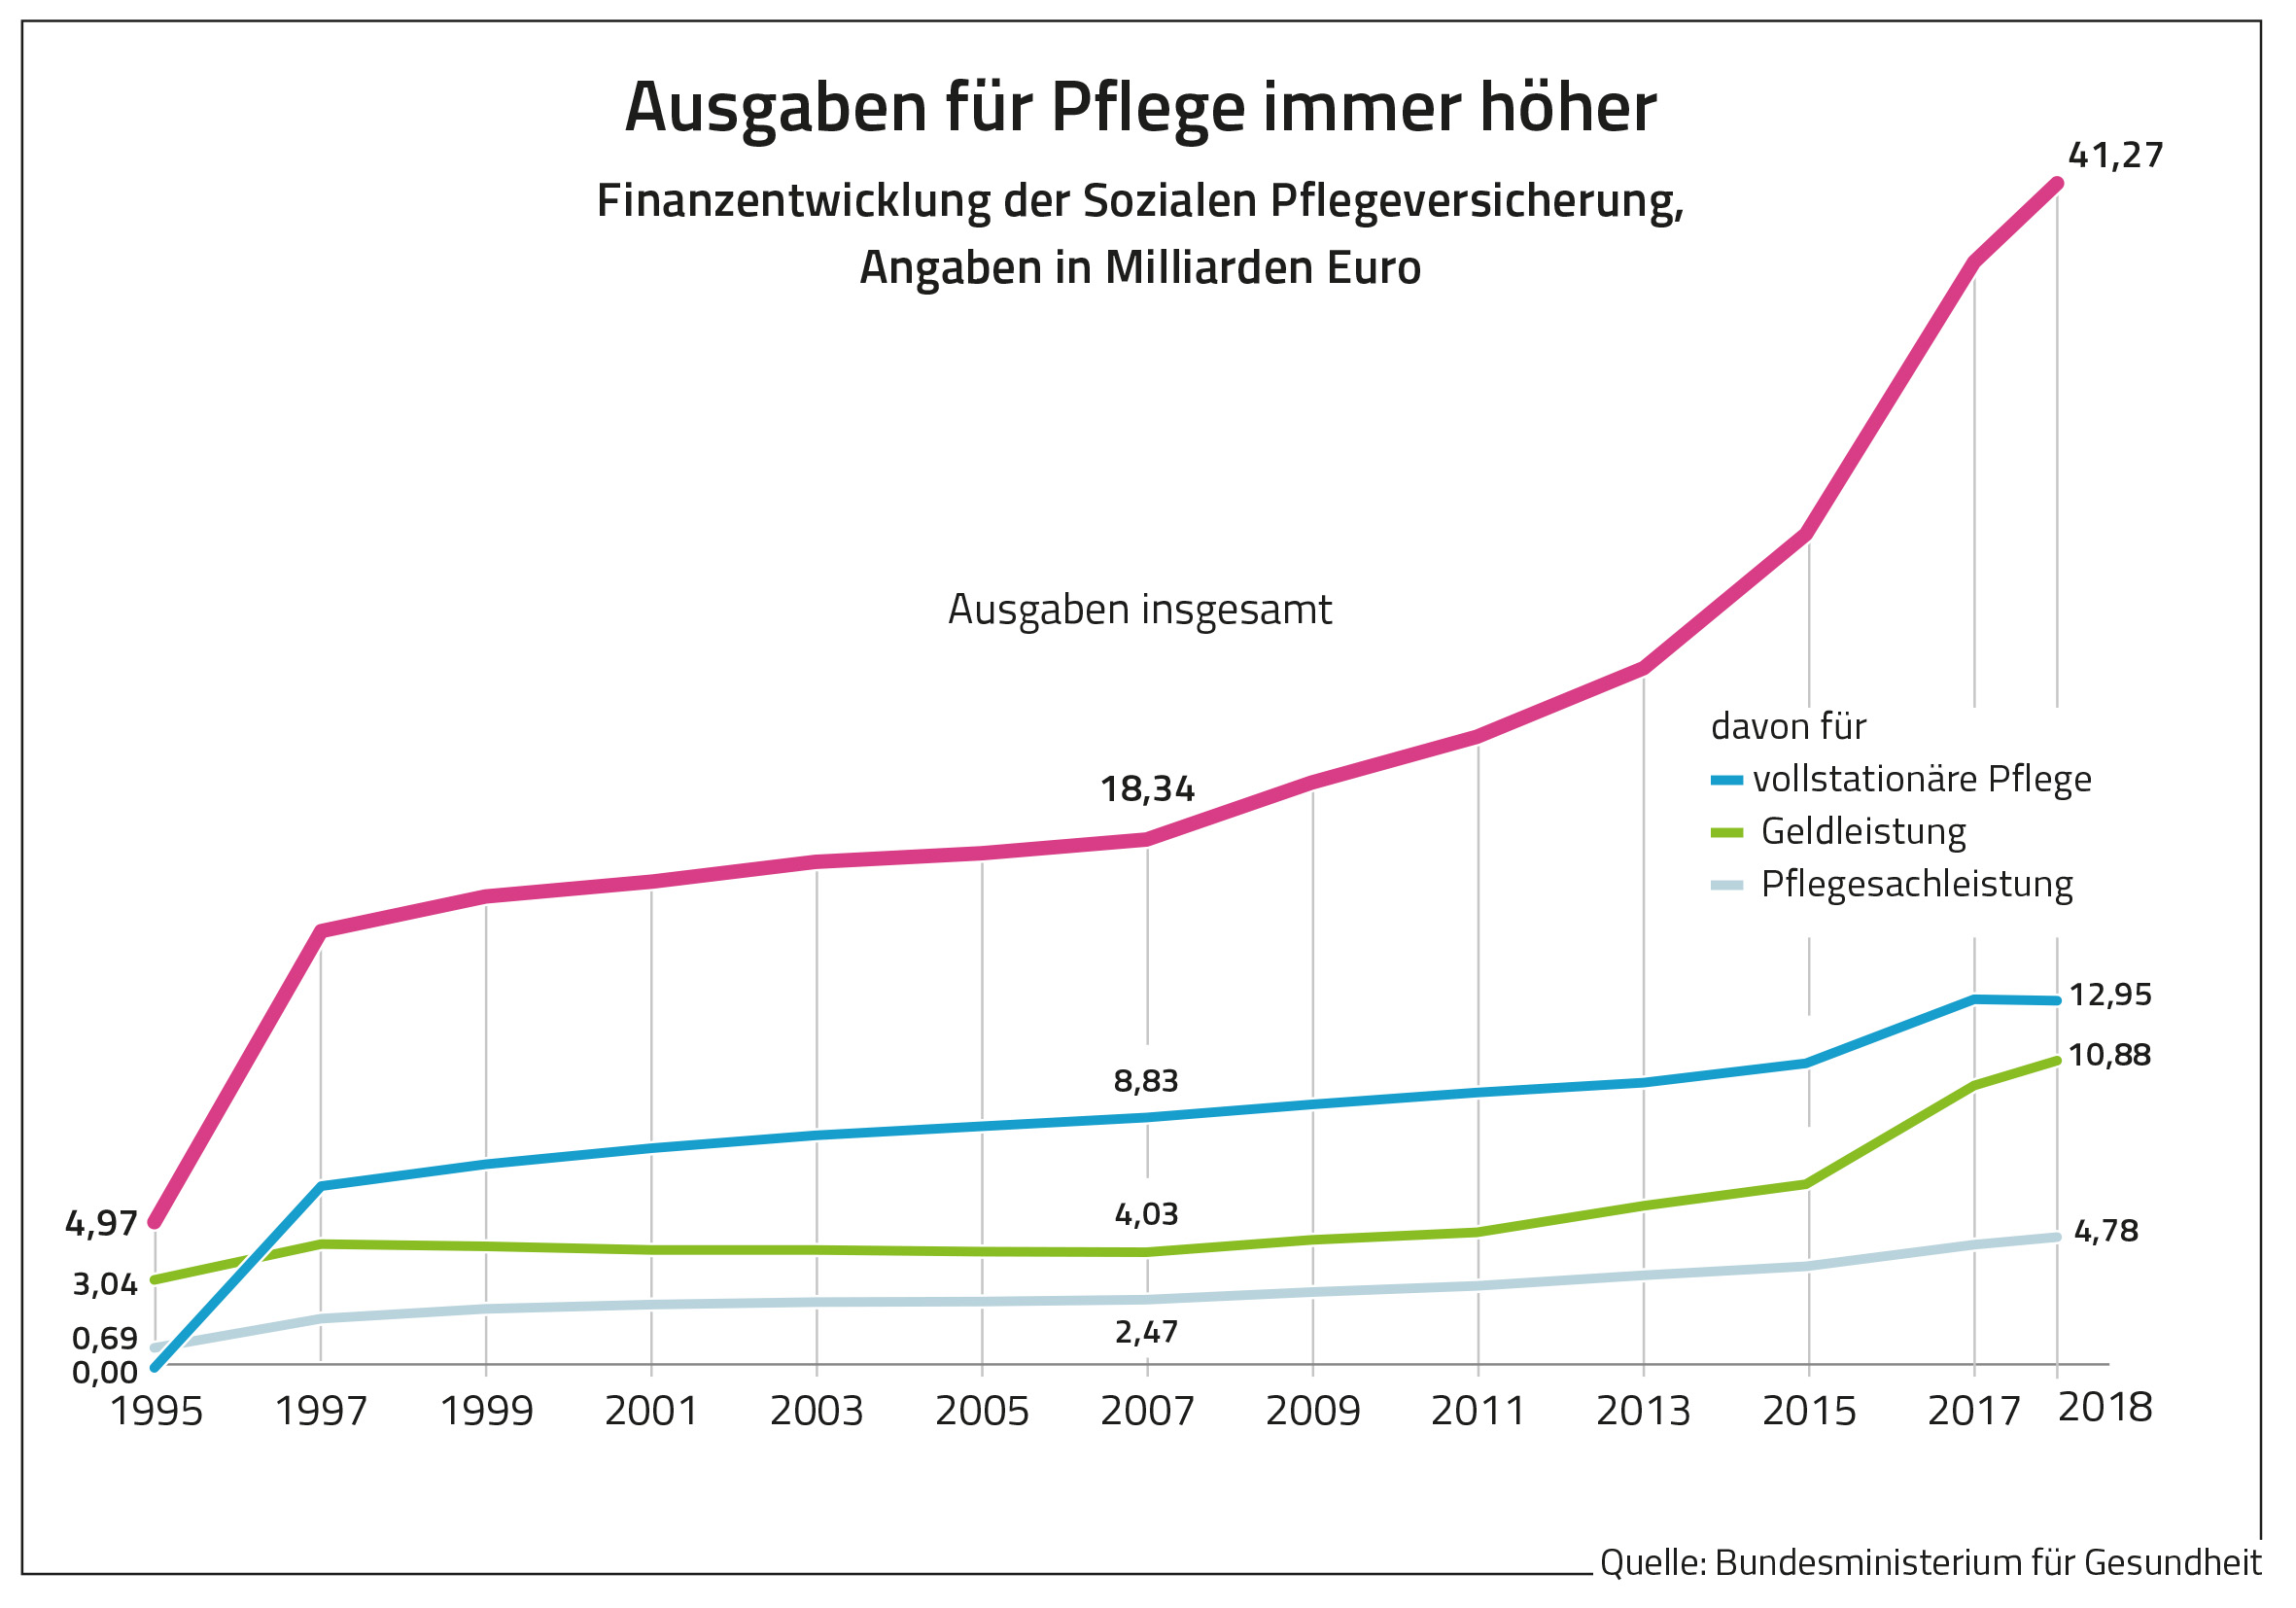 Die Grafik zeigt die Finanzentwicklung der Sozialen Pflegeversicherung, Angaben in Milliarden Euro.